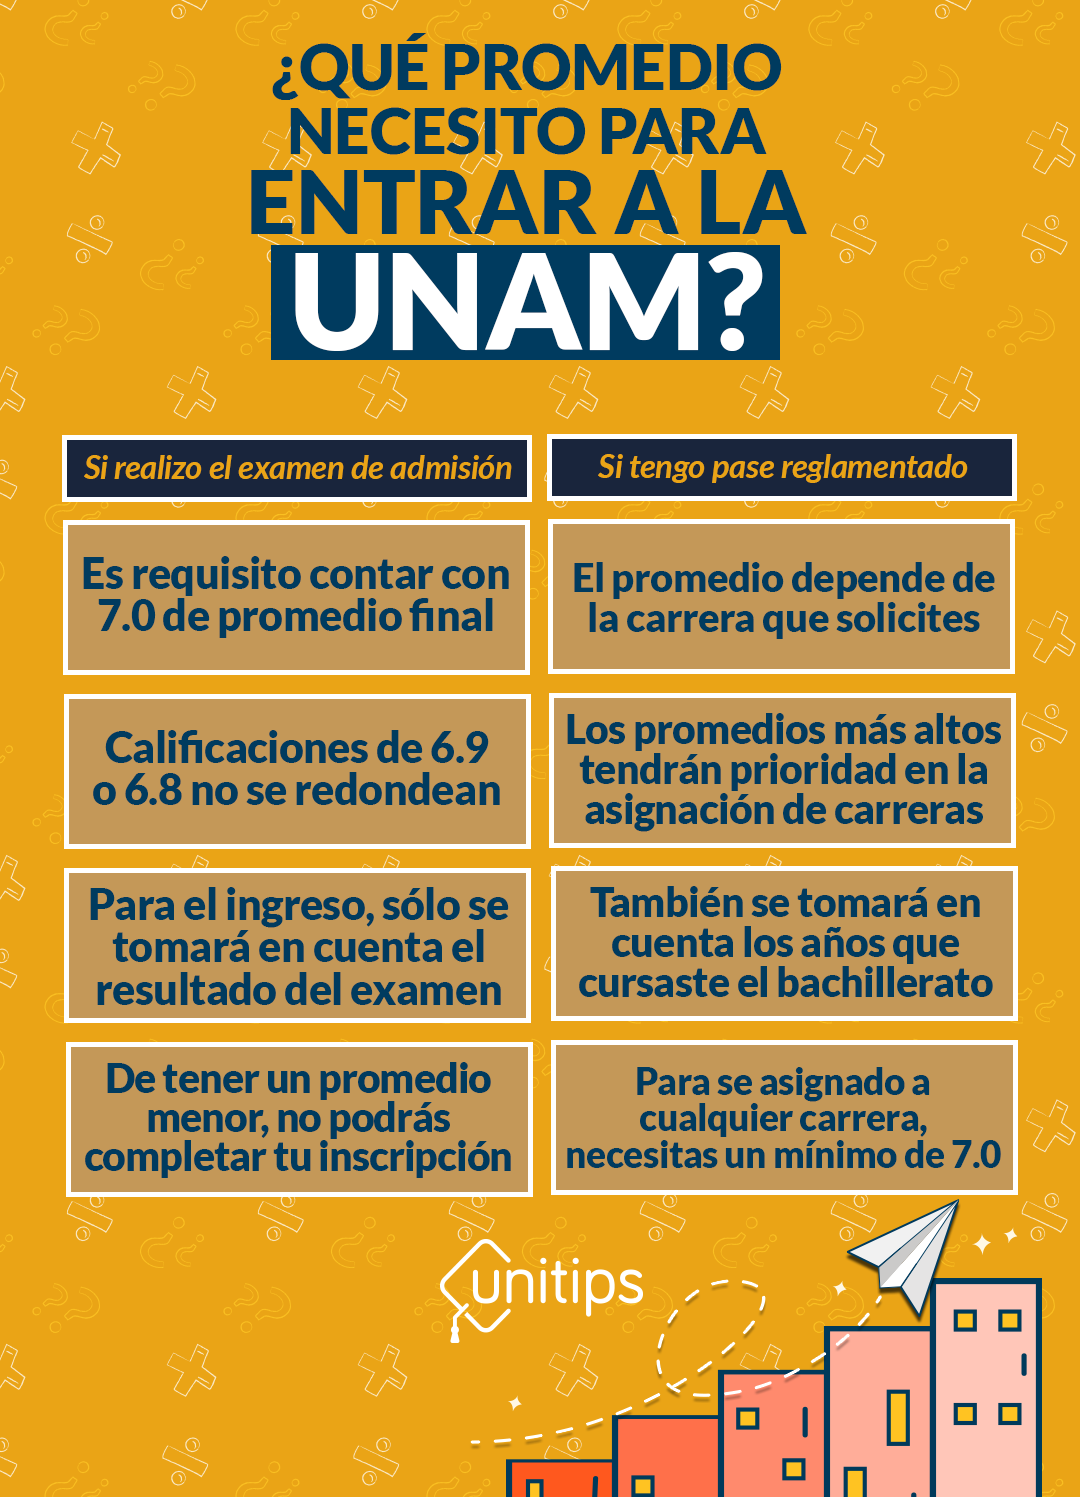 ¿Cuál es el promedio para entrar a la UNAM